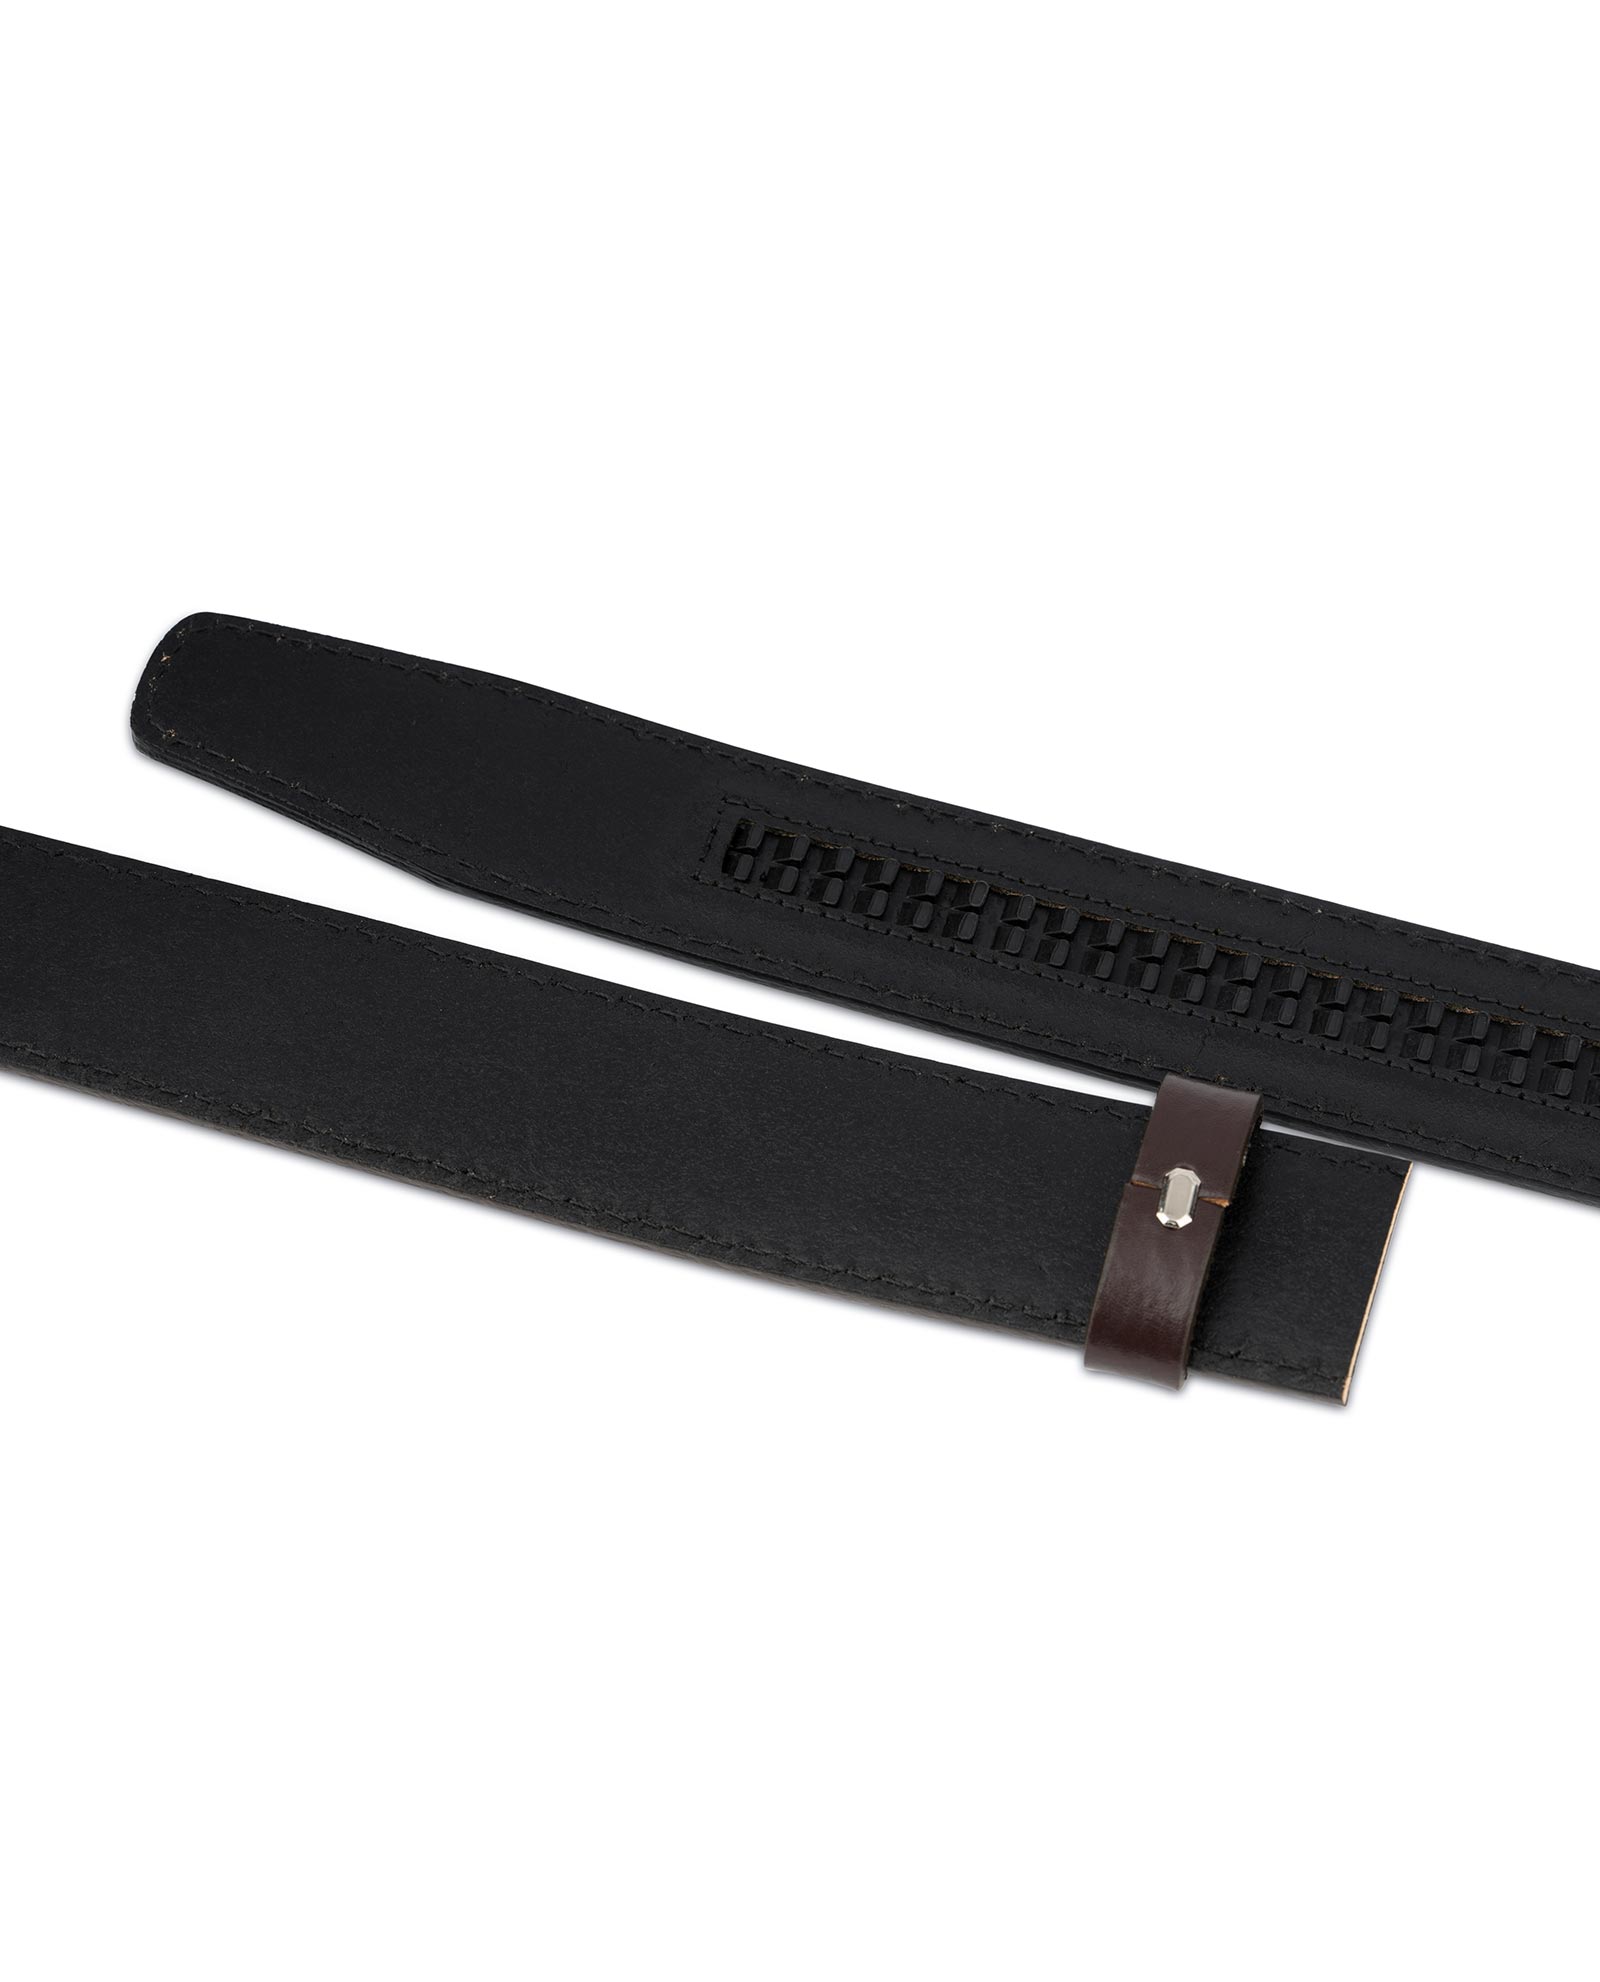 Buy Dark Brown Leather Strap for Ratchet Belt | LeatherBeltsOnline.com